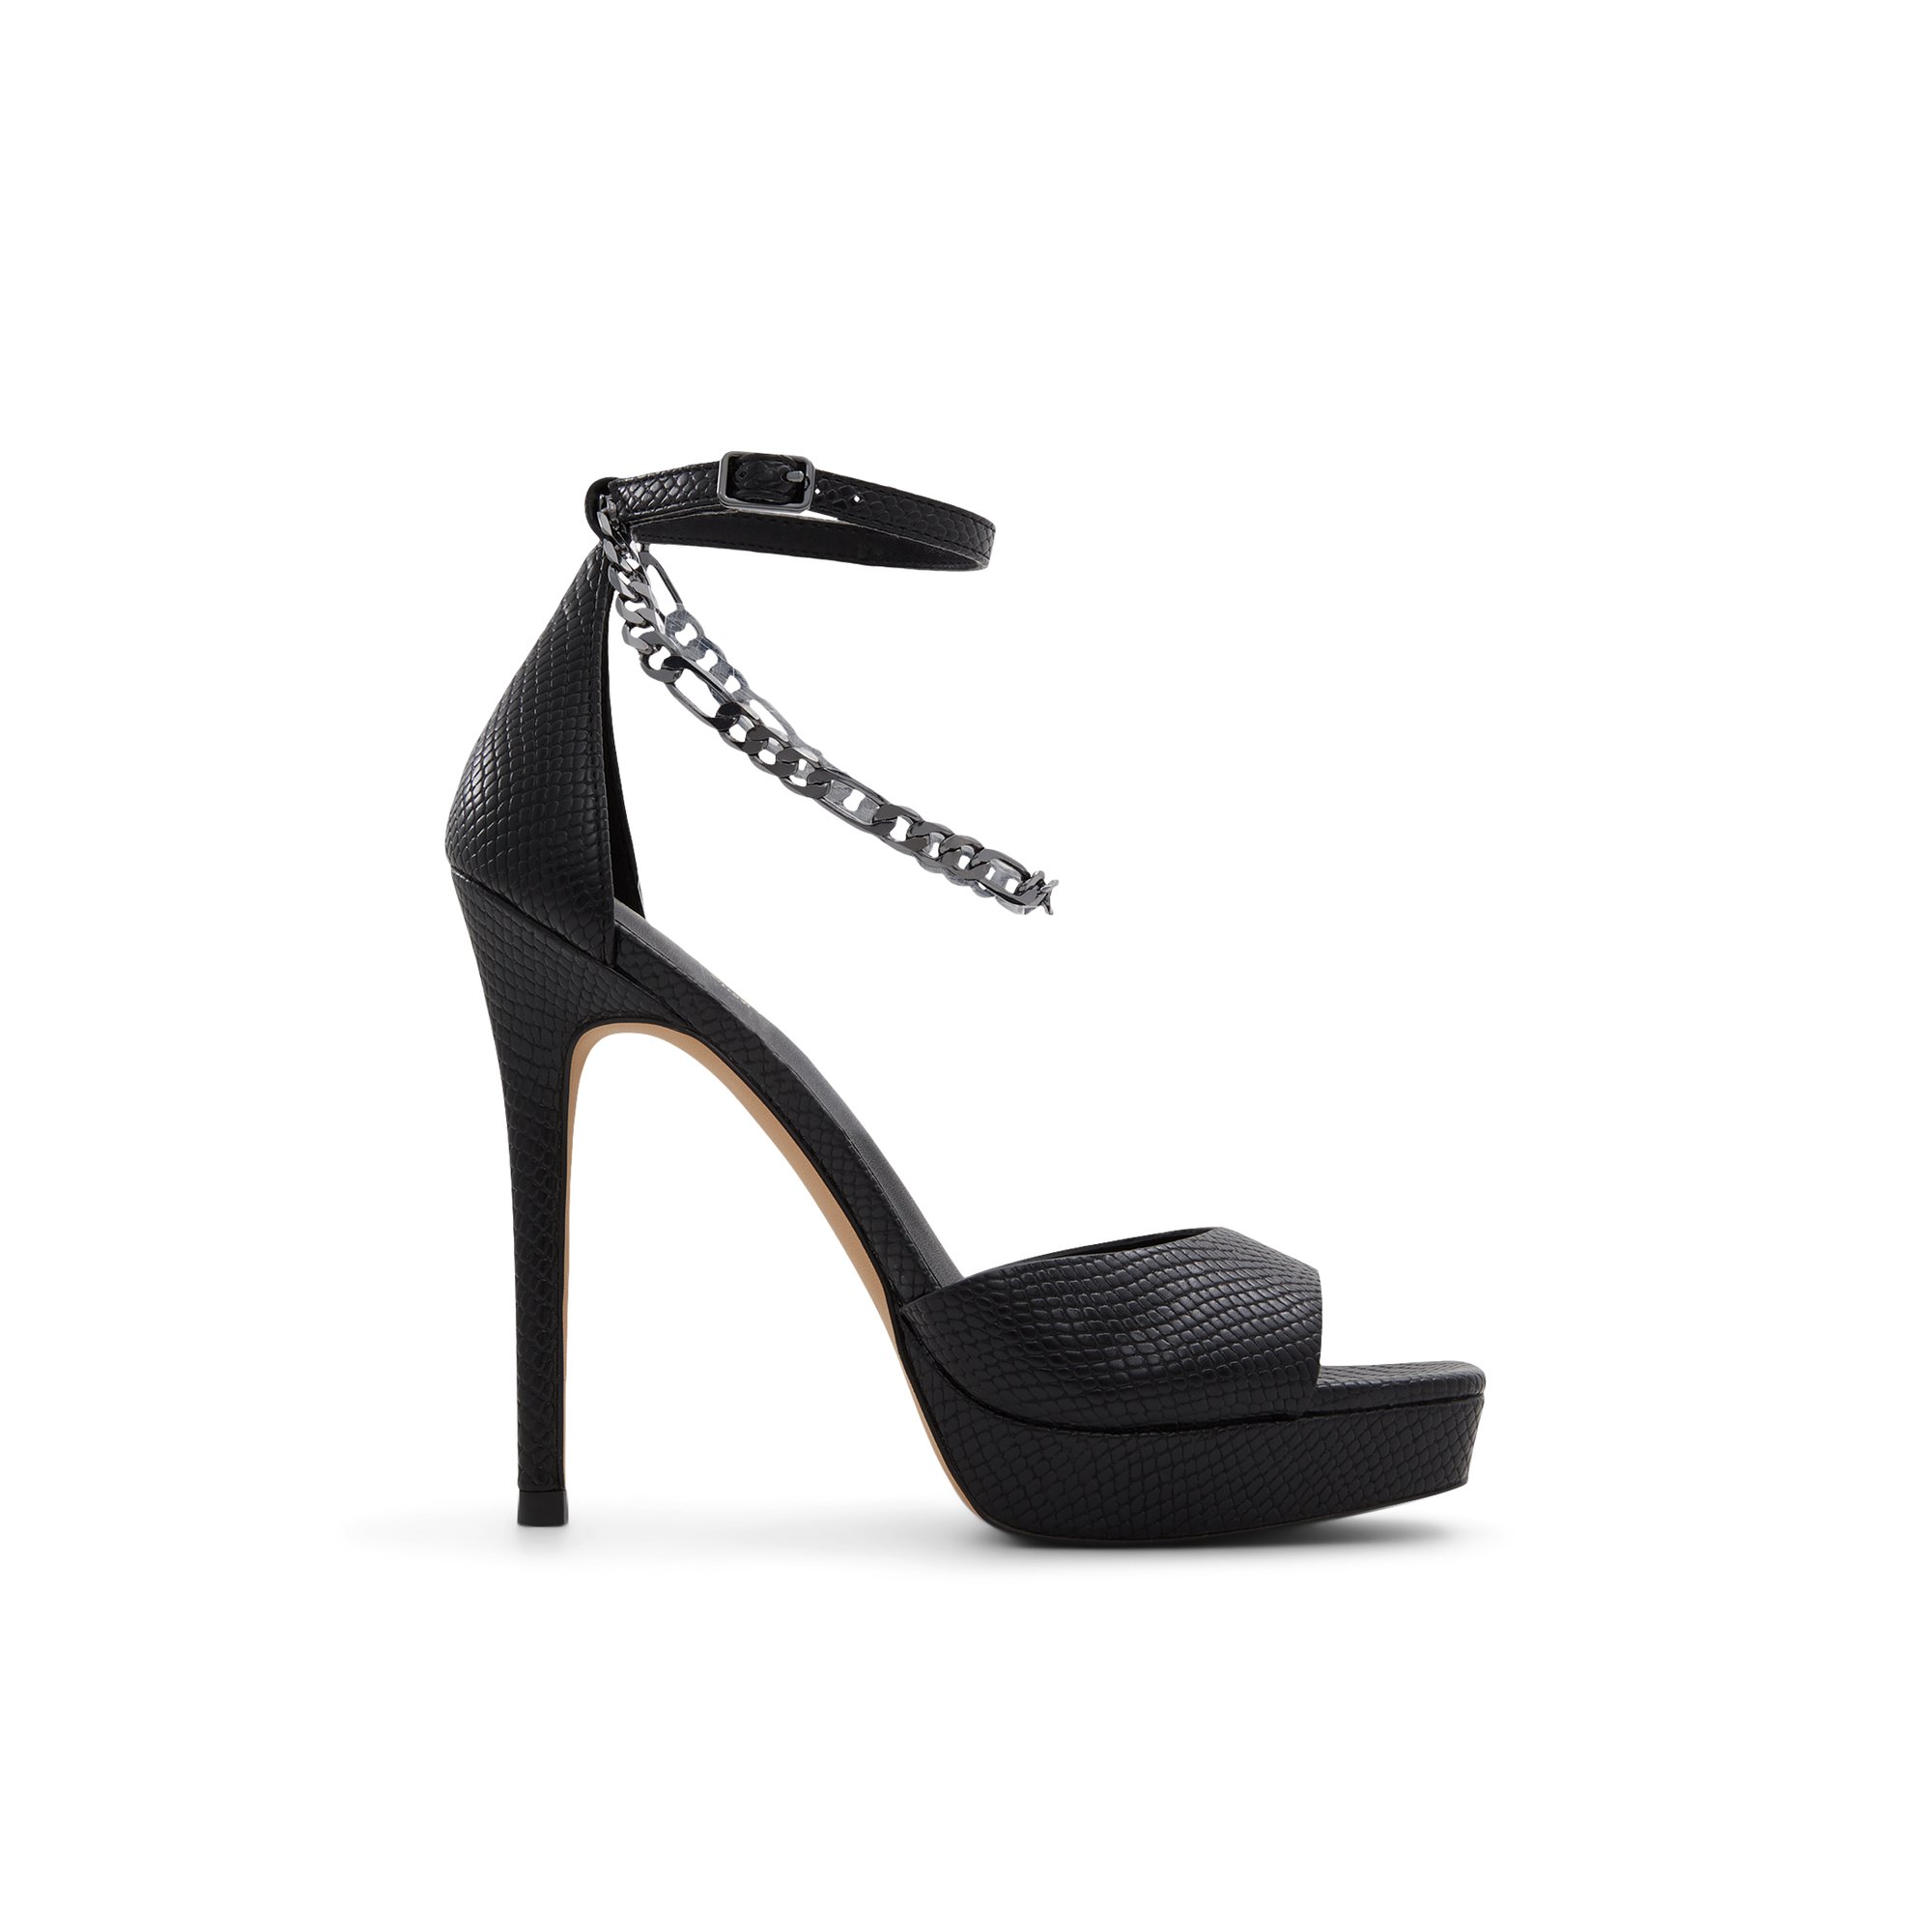 ALDO Prisilla - Women's Strappy Sandal Sandals - Black